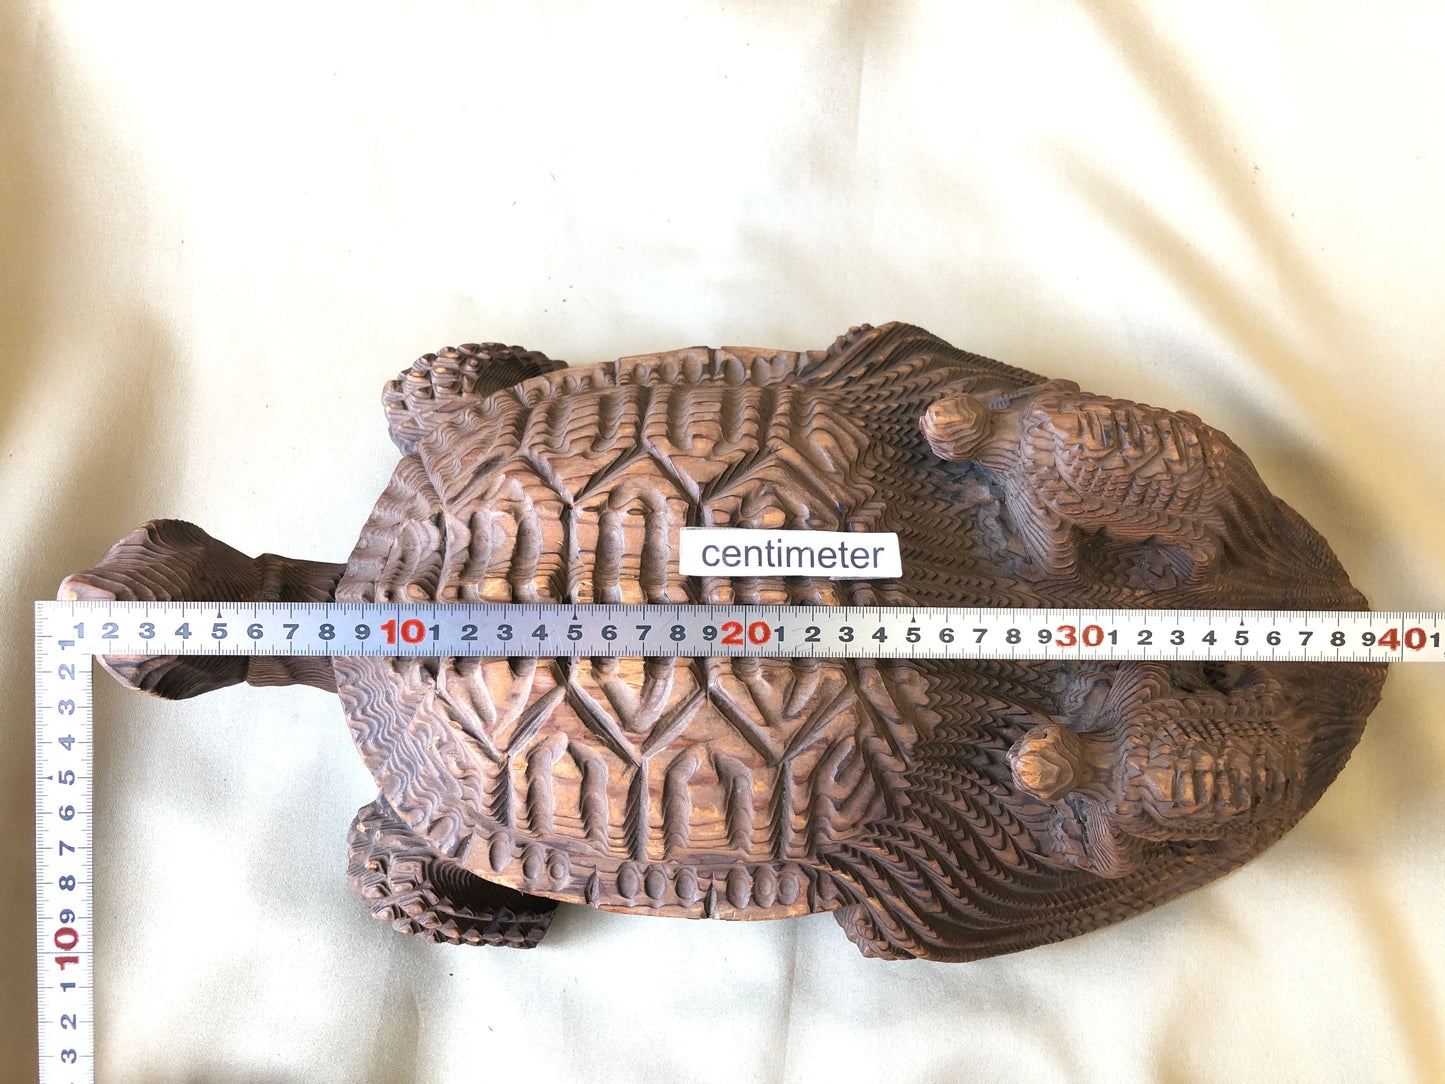 Y4288 OKIMONO wood carving Parent Child Turtle figure Japan antique vintage